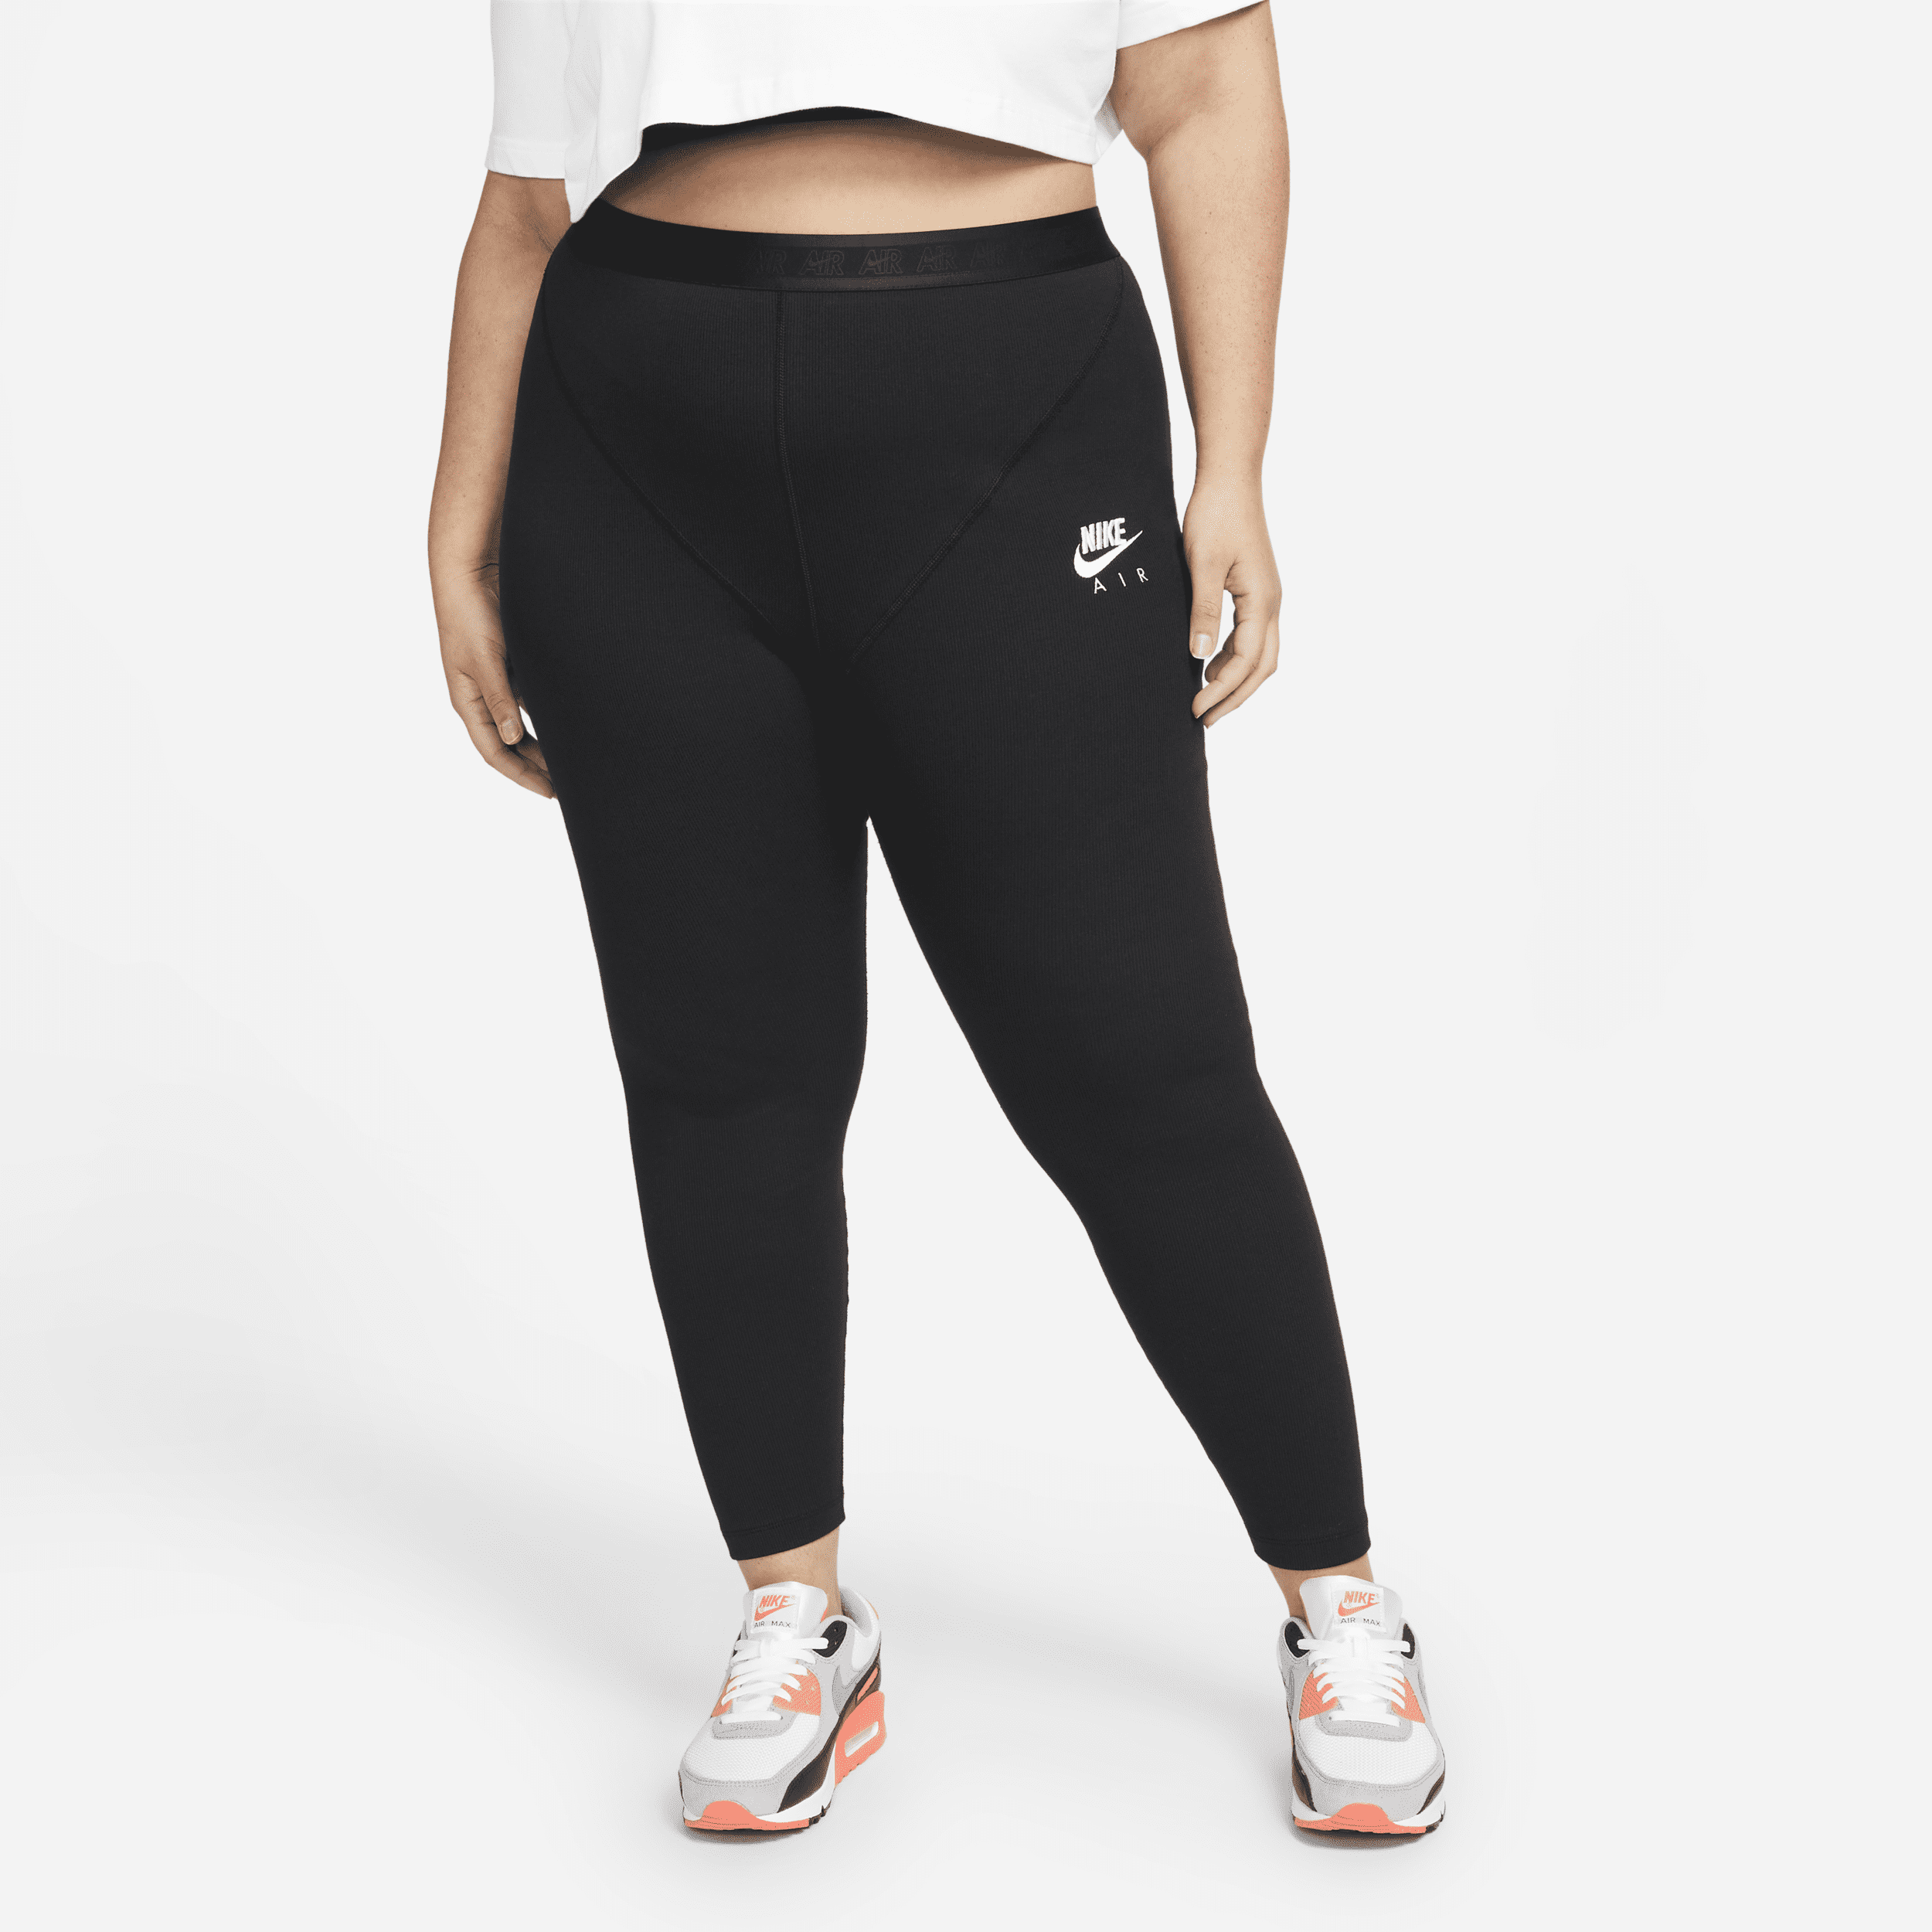 Leggings caneladas de cintura subida Nike Air para mulher (tamanhos grandes) - Preto